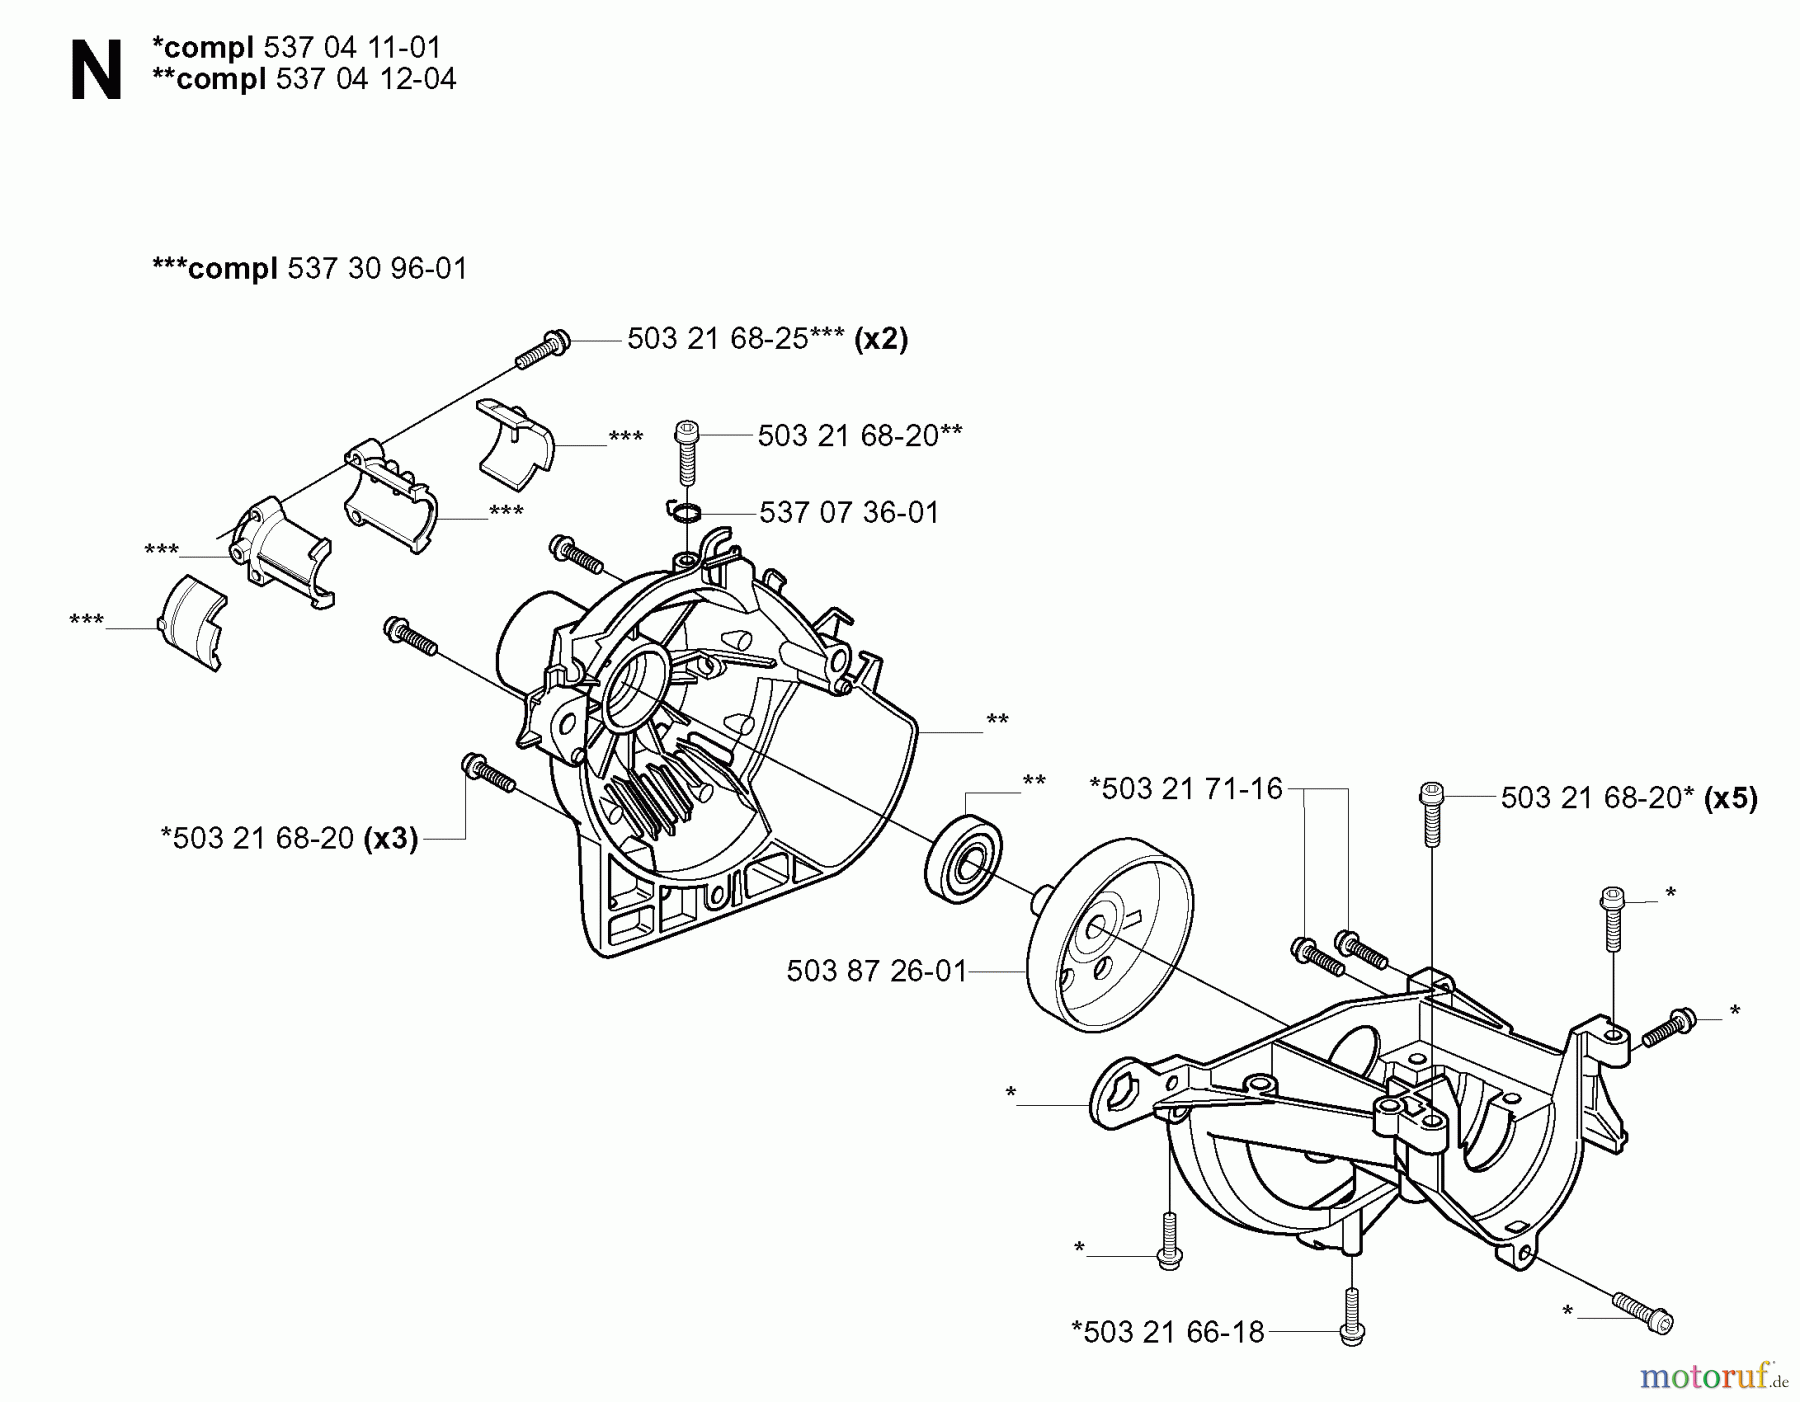  Jonsered Motorsensen, Trimmer GC2125 - Jonsered String/Brush Trimmer (2004-01) CRANKCASE